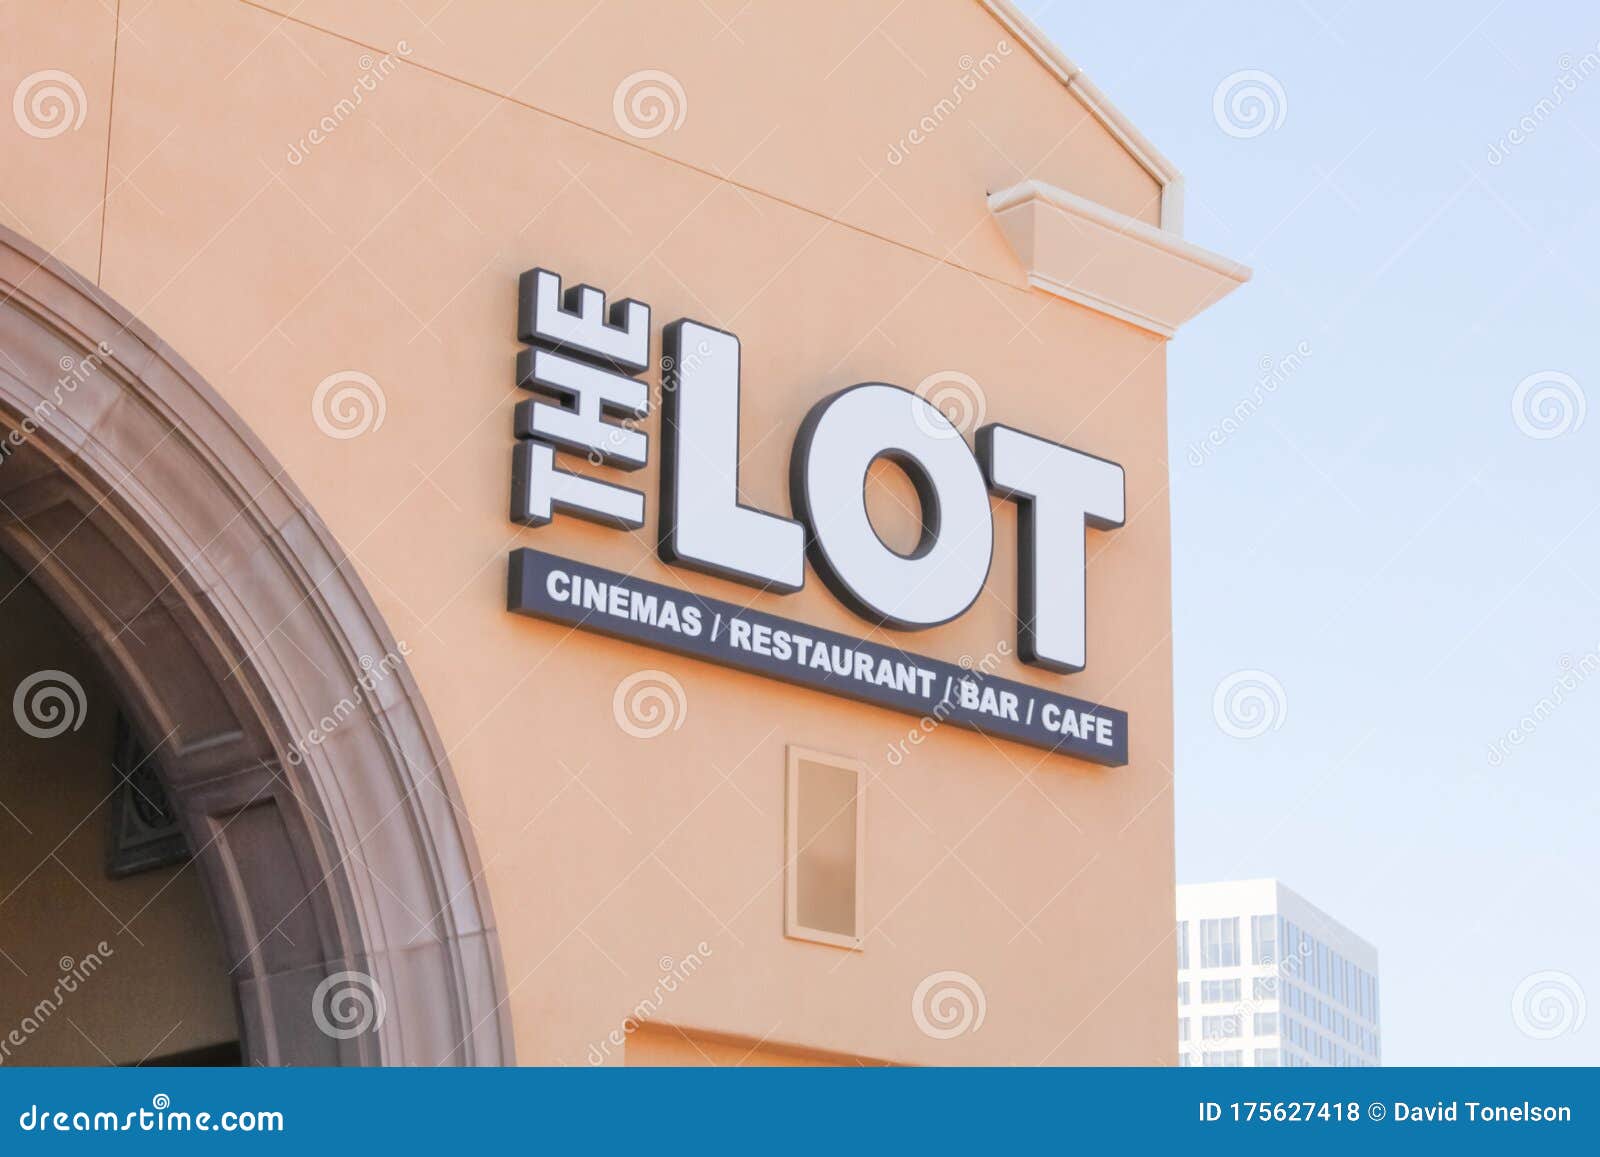 Restaurant, THE LOT Newport Beach